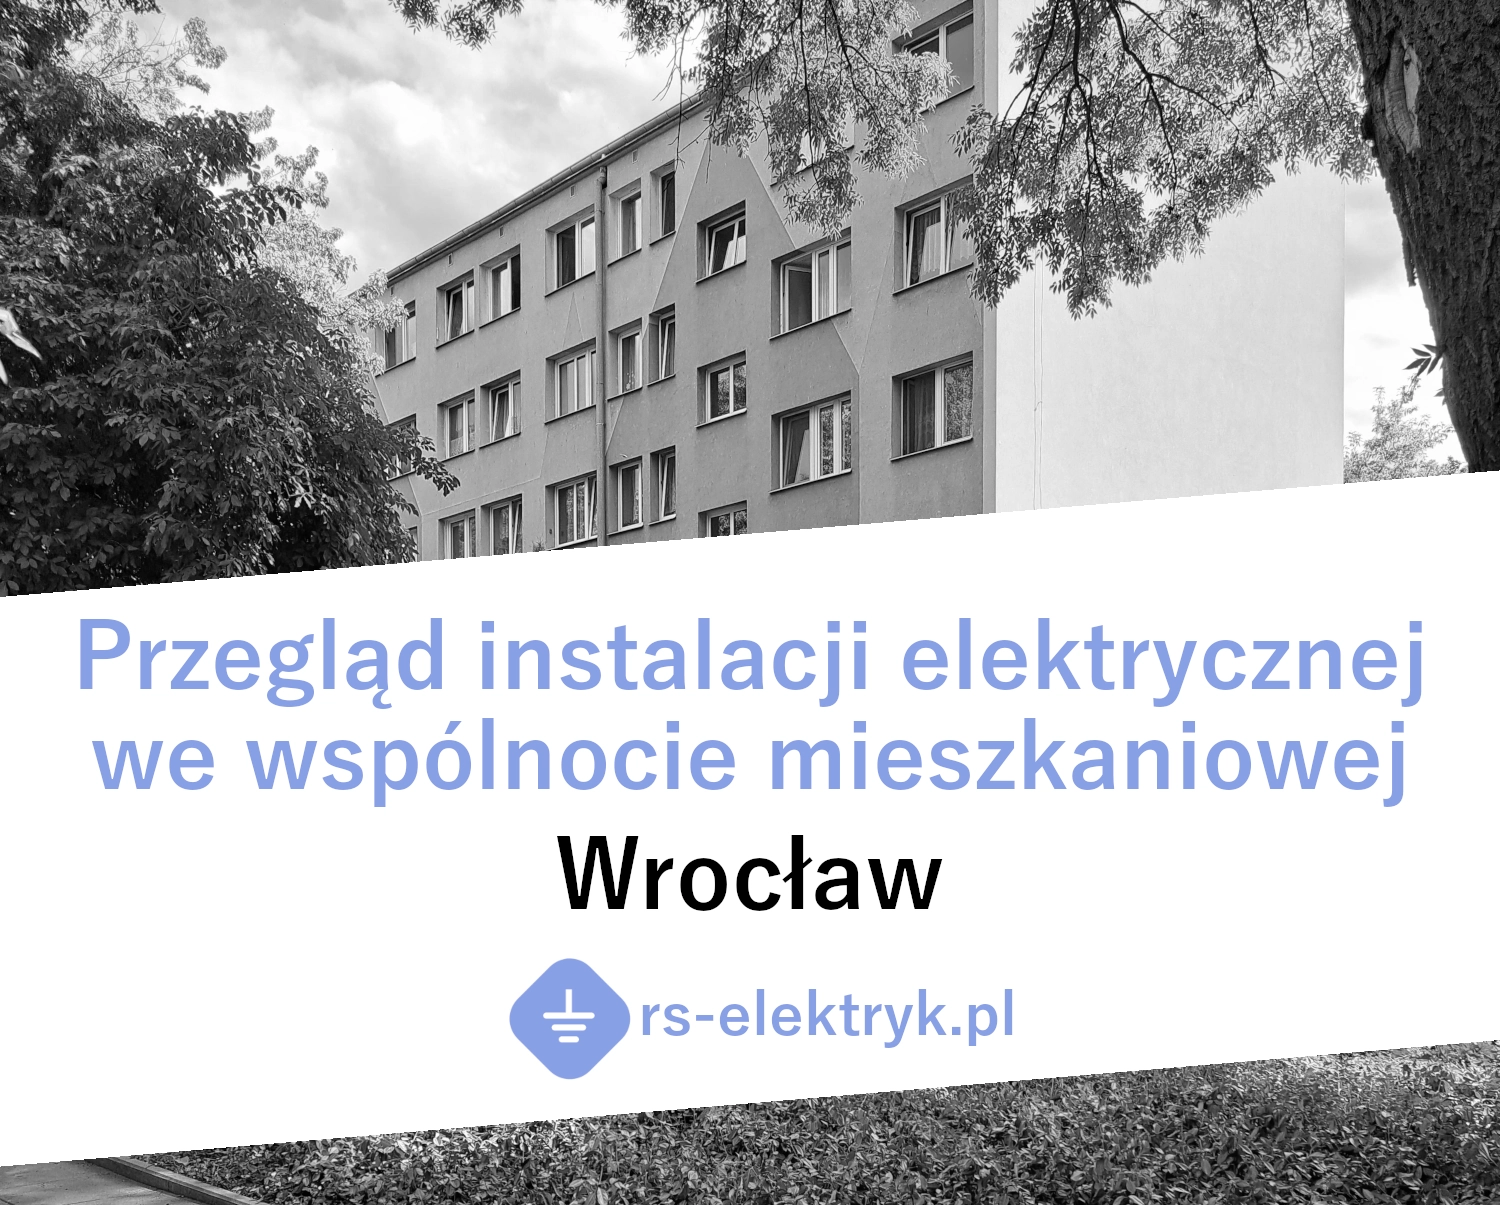 Przegląd instalacji elektrycznej we wspólnocie mieszkaniowej (Wrocław)